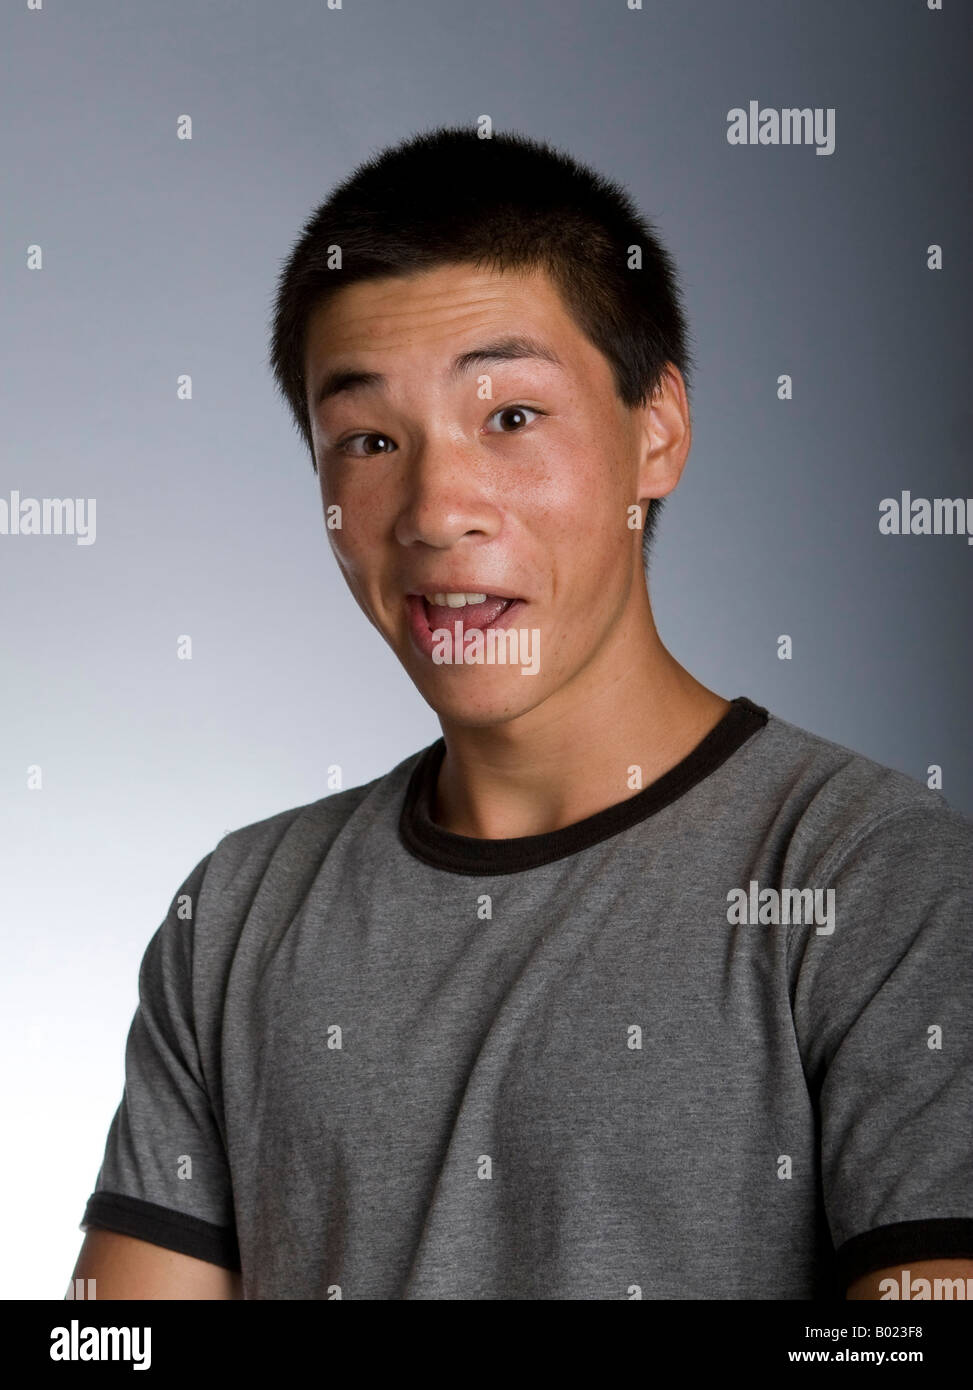 Studio-Porträt von teenage ethnischen männlich mit goofy Gesichtsausdruck. Stockfoto